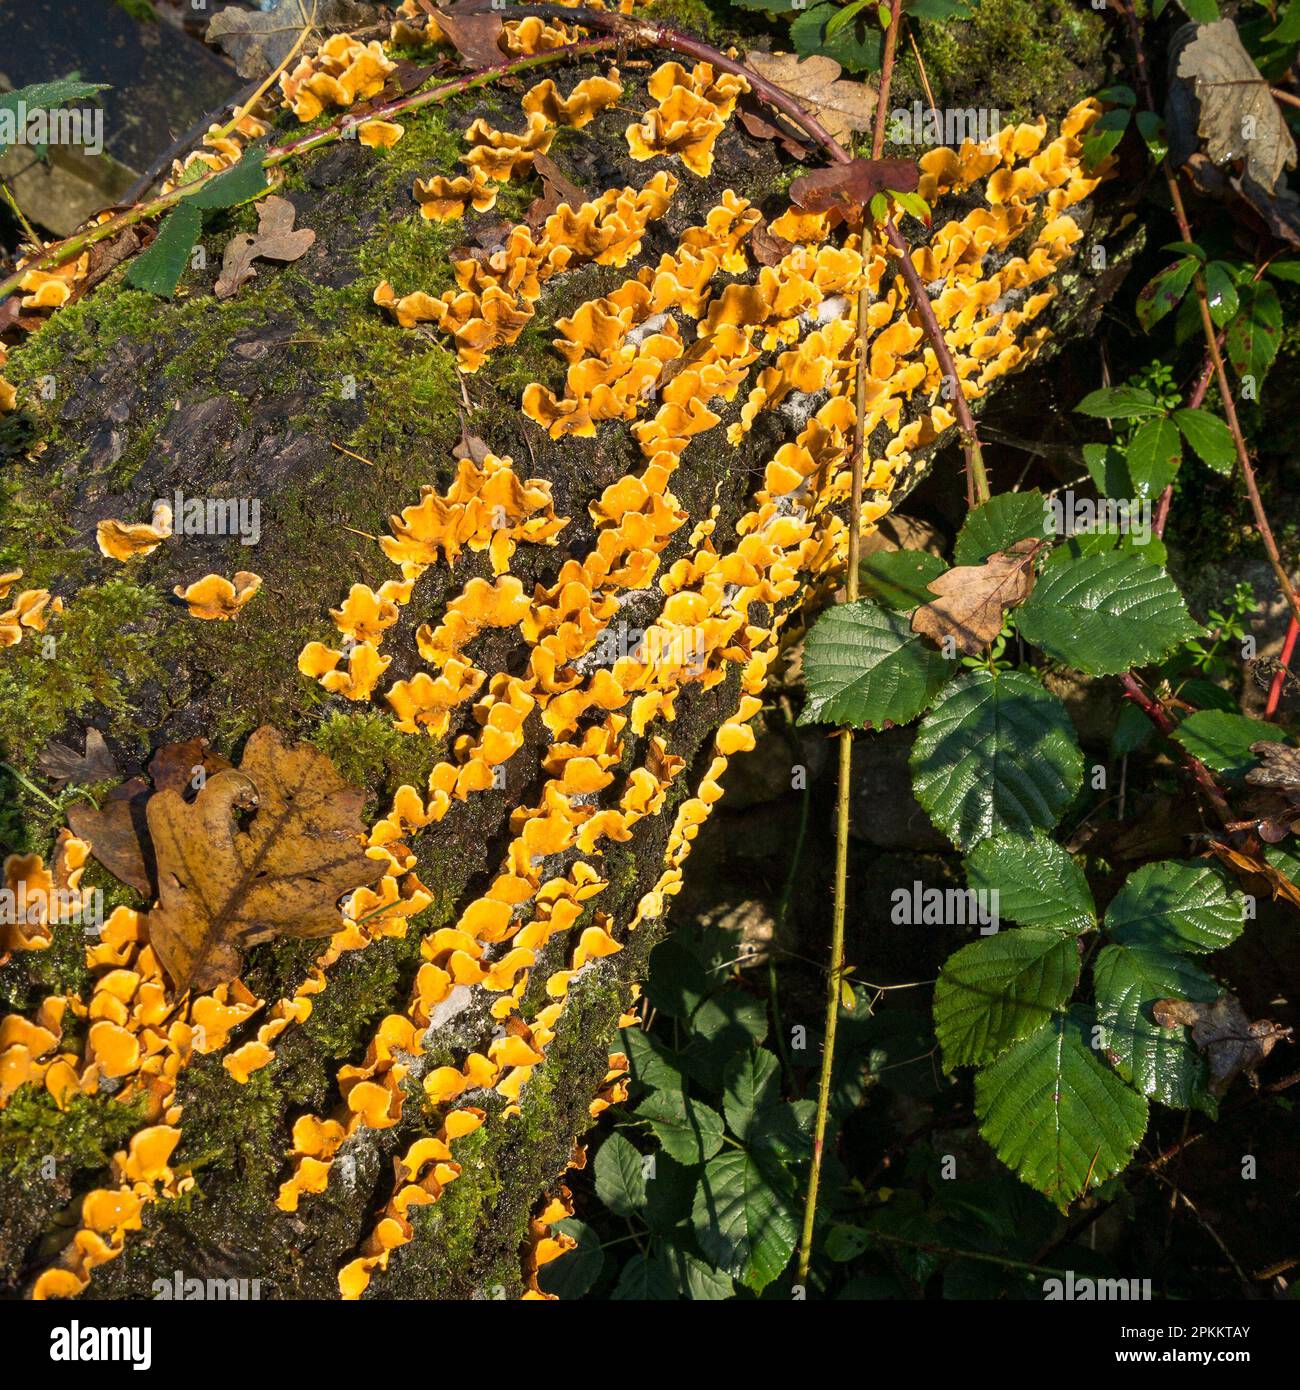 Hairy Curtain Crust (Stereum hirsutum) Bracket Pilz wächst auf totem Baumstamm, Cumbria, England, Großbritannien Stockfoto